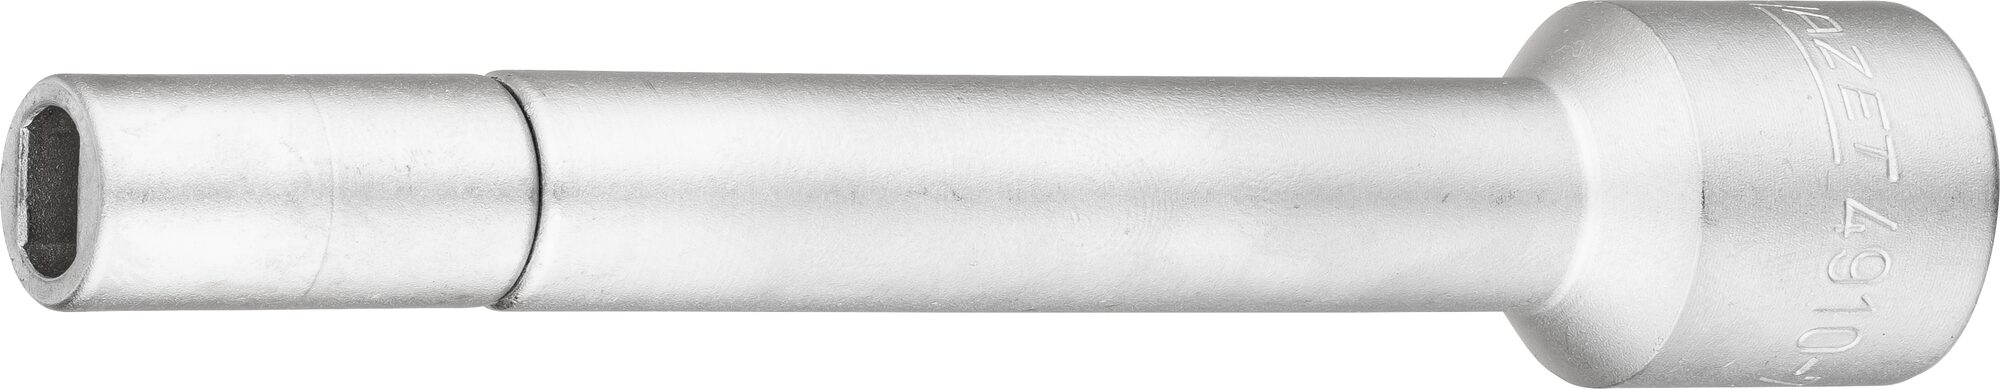 HAZET Verlängerung 4910-71 · Vierkant hohl 12,5 mm (1/2 Zoll) · Zapfenprofil hohl · für Zapfenprofil 7,1 x 9,6 mm